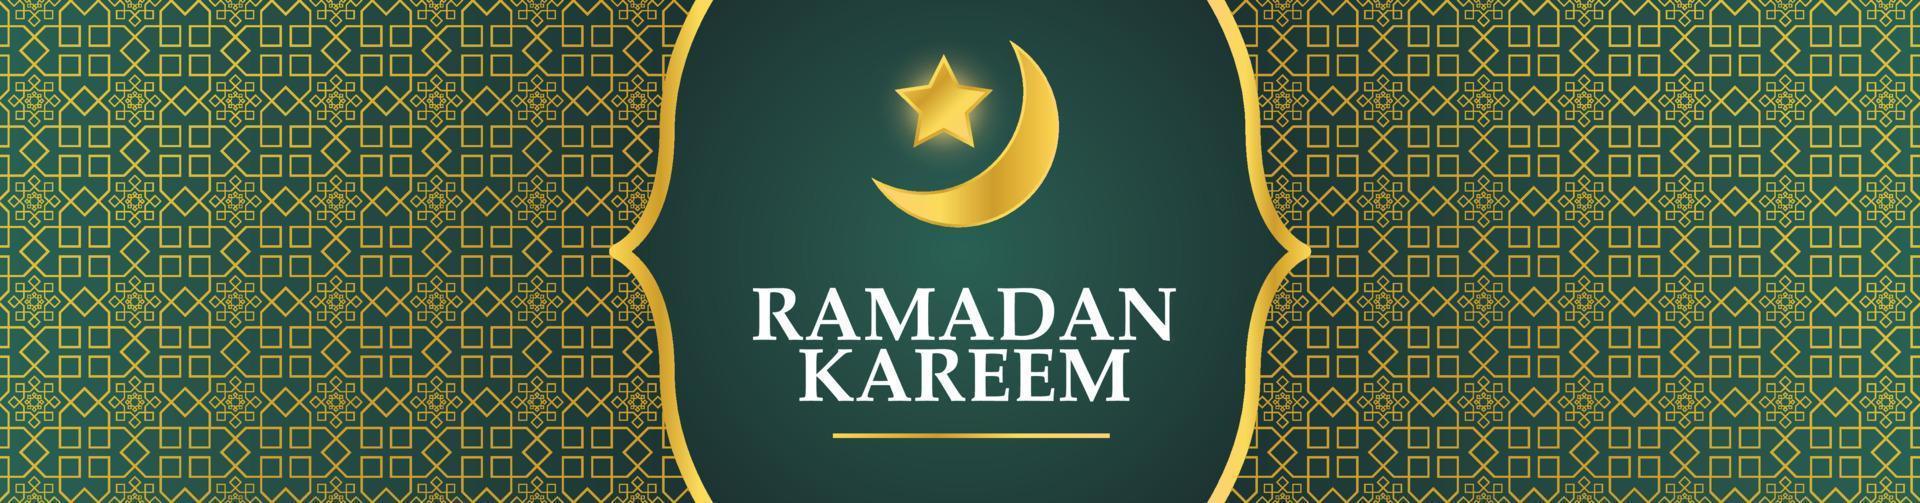 Ramadan kareem spandoek. Ramadan Islamitisch vakantie grafisch sjabloon met goud ornament en halve maan vector